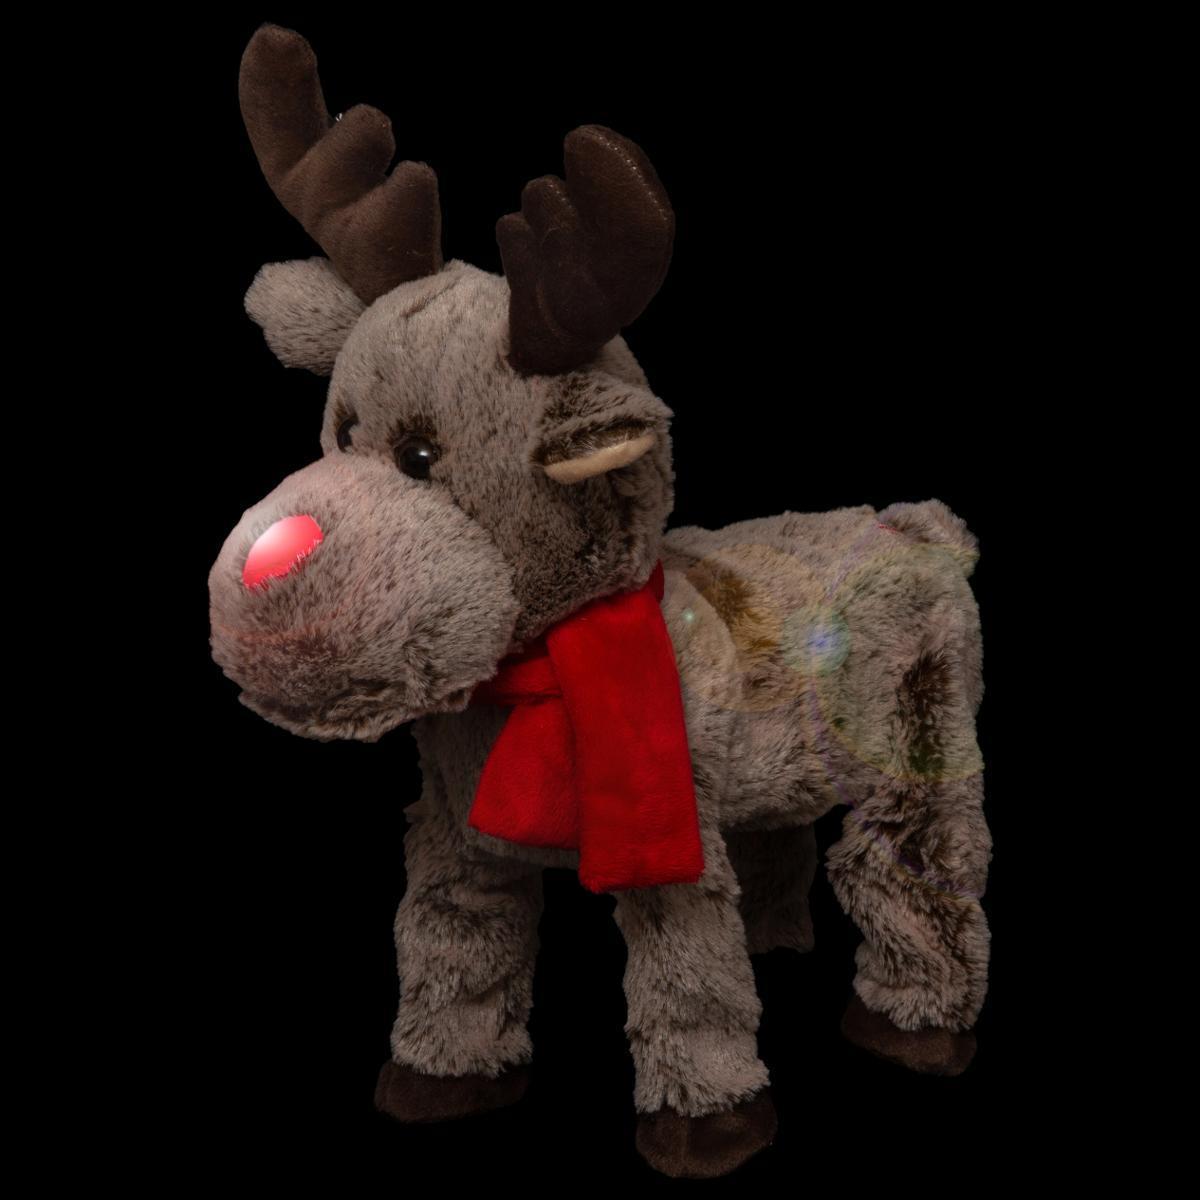 Automate de Noël - renne funny qui marche - 1 LED rouge dans le nez